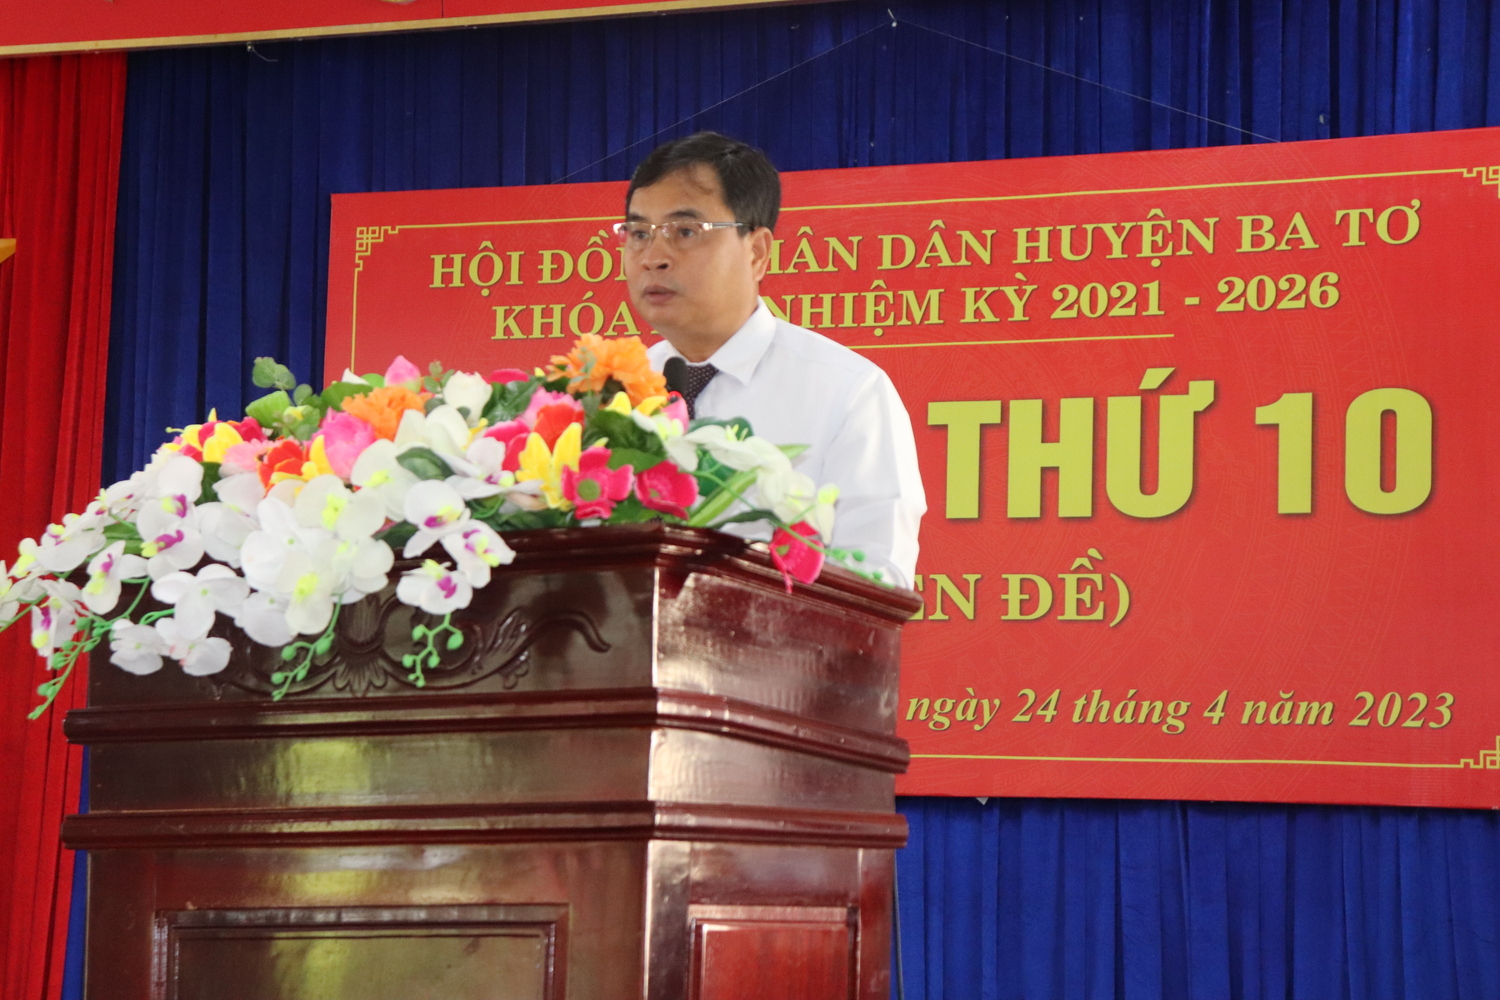 Hội đồng nhân dân huyện Ba Tơ tổ chức kỳ họp thứ 10